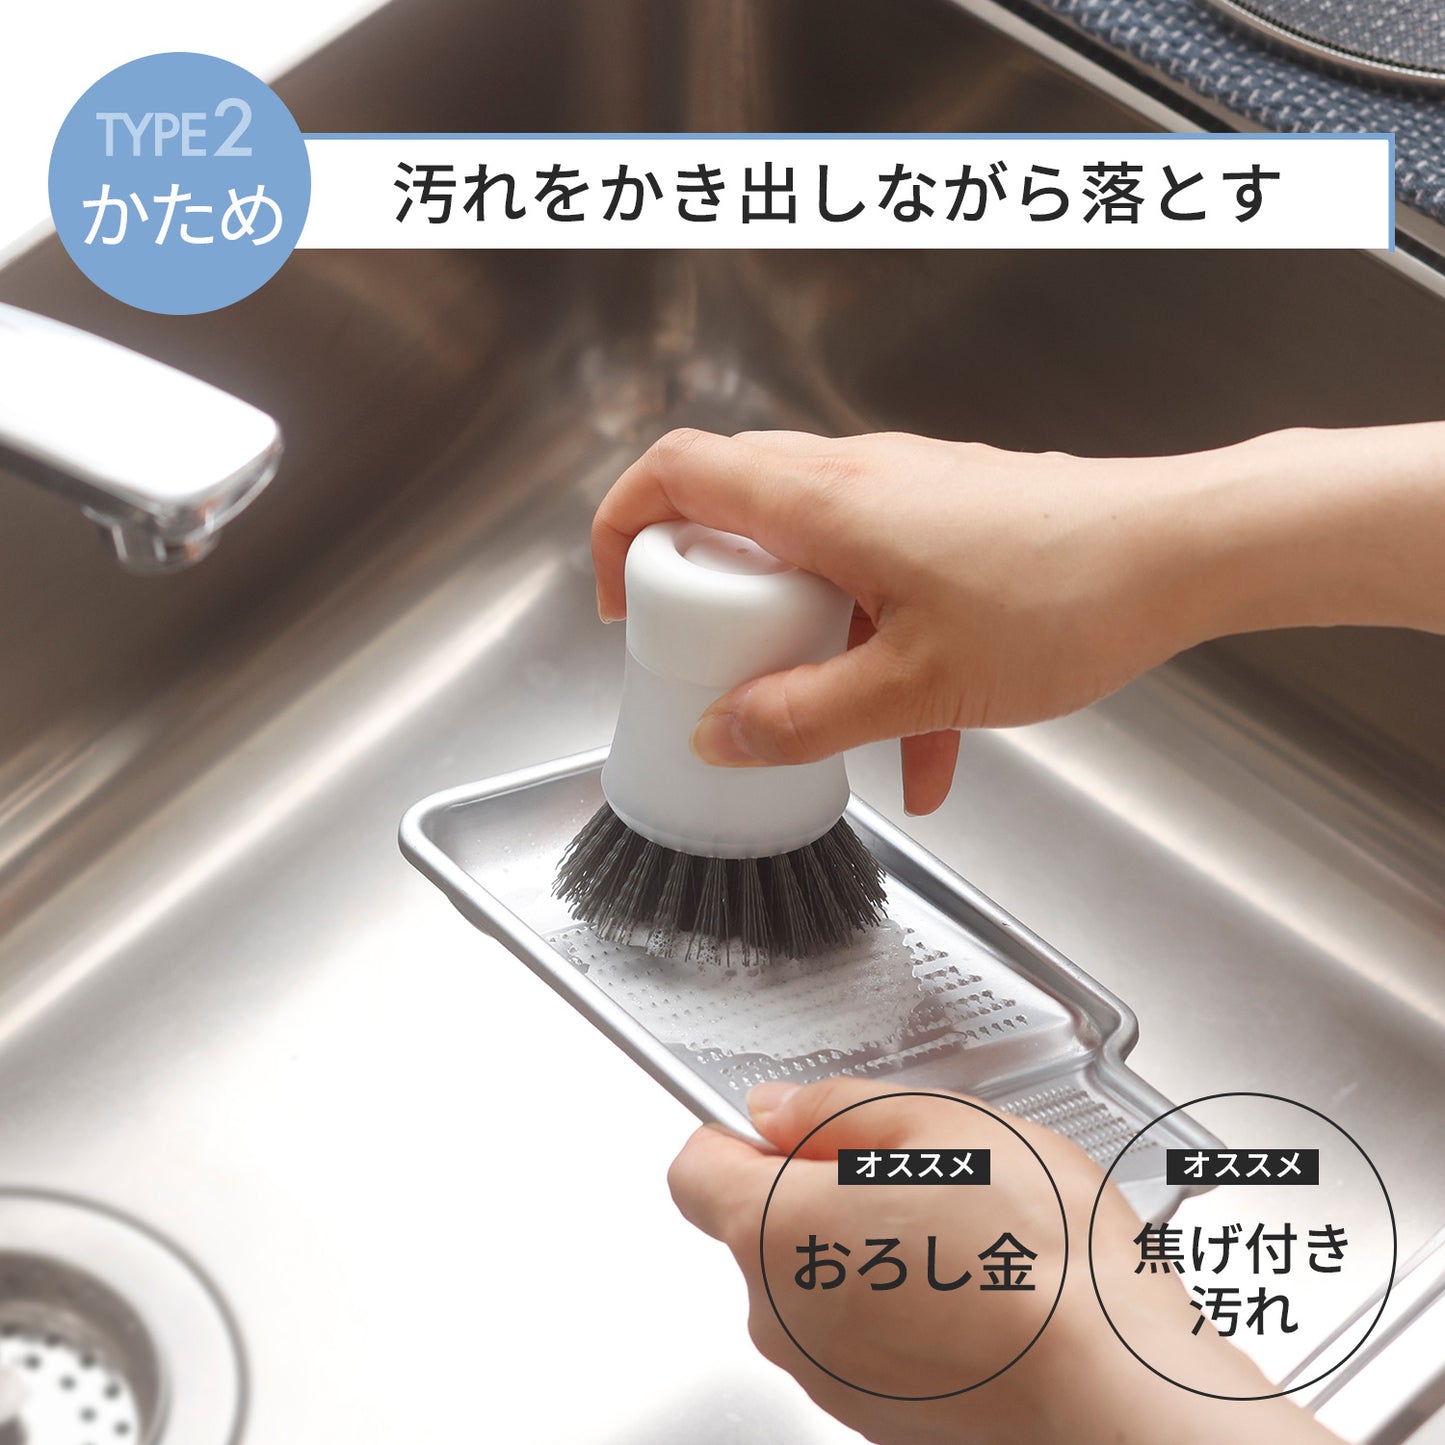 【預購】日本進口 Marna 一鍵式快速清洗廚房清潔刷